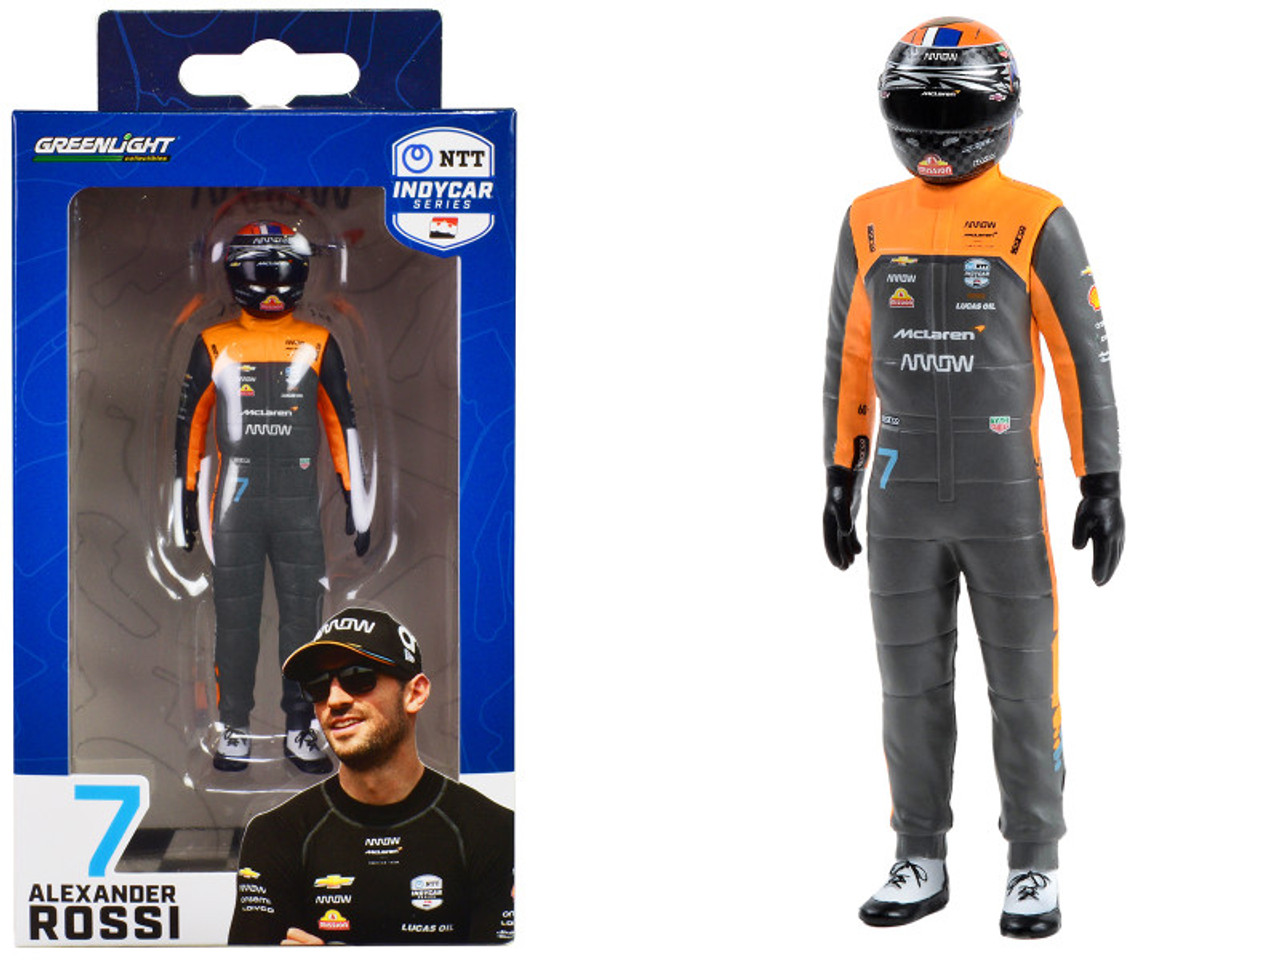 "NTT IndyCar Series" #7 Alexander Rossi Driver Figure "McLaren - Arrow McLaren" for 1/18 Scale Models by Greenlight